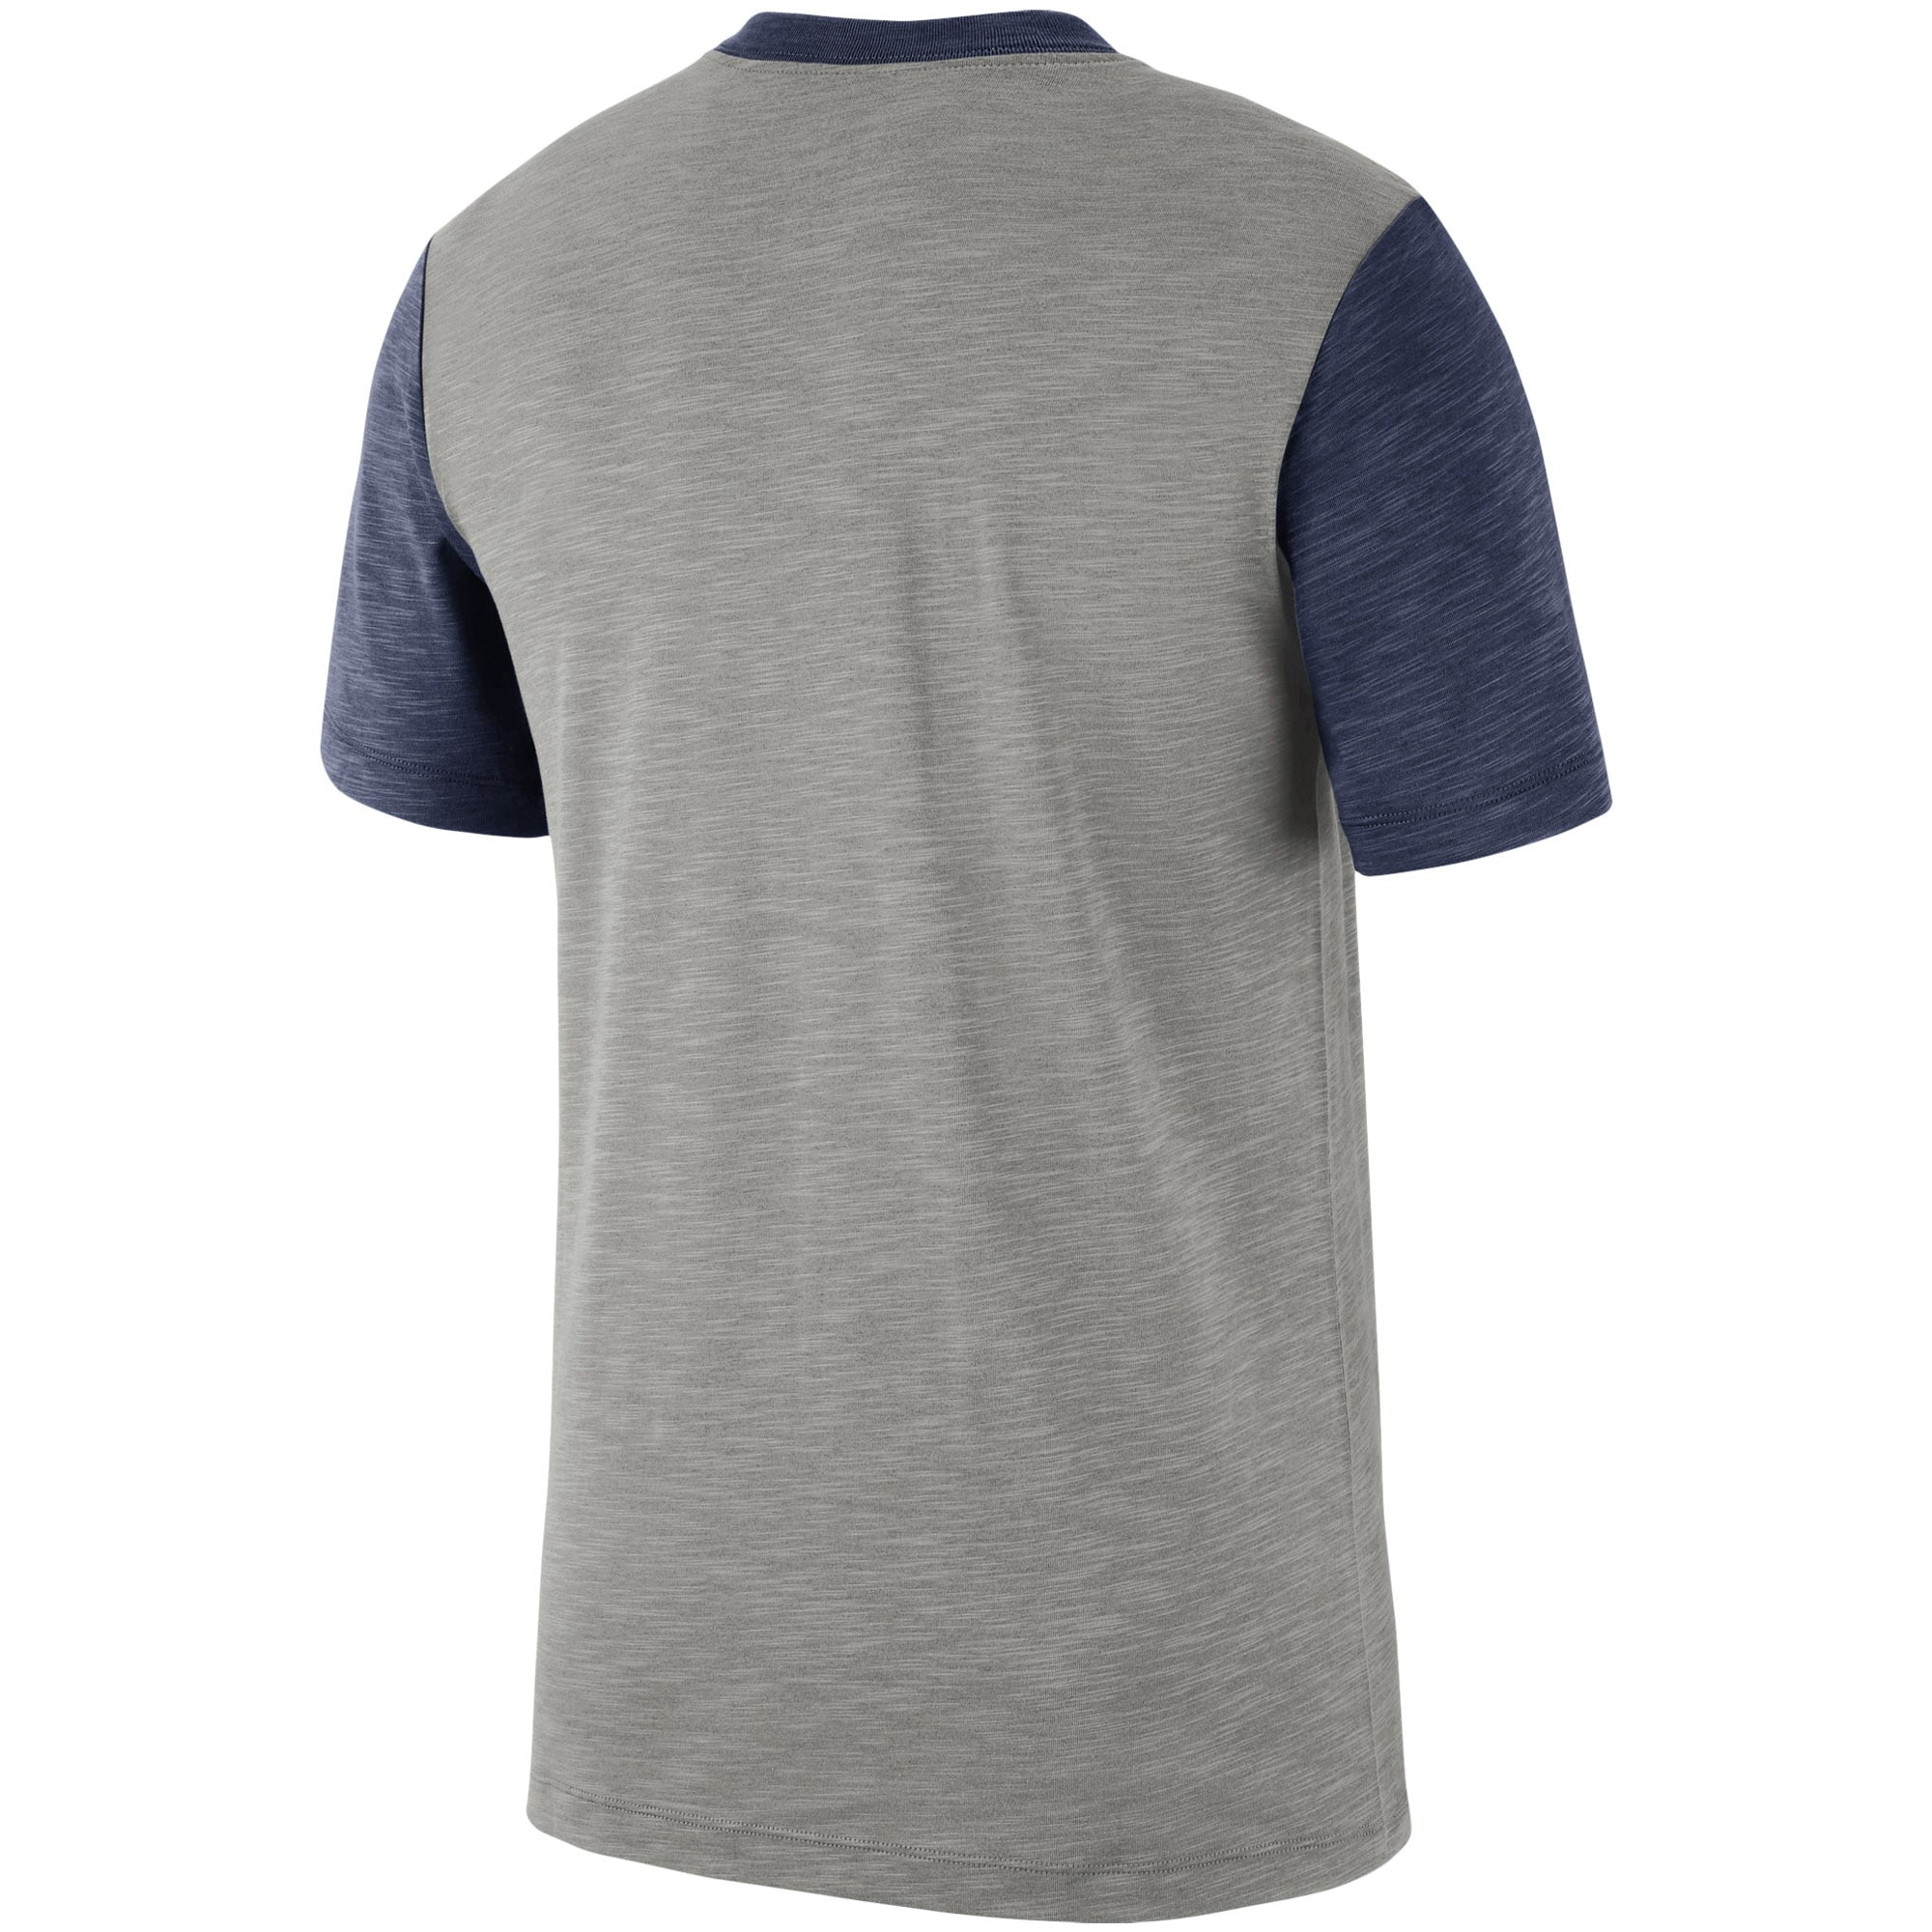 Nike Mens Baseball Performance Slub T-Shirt